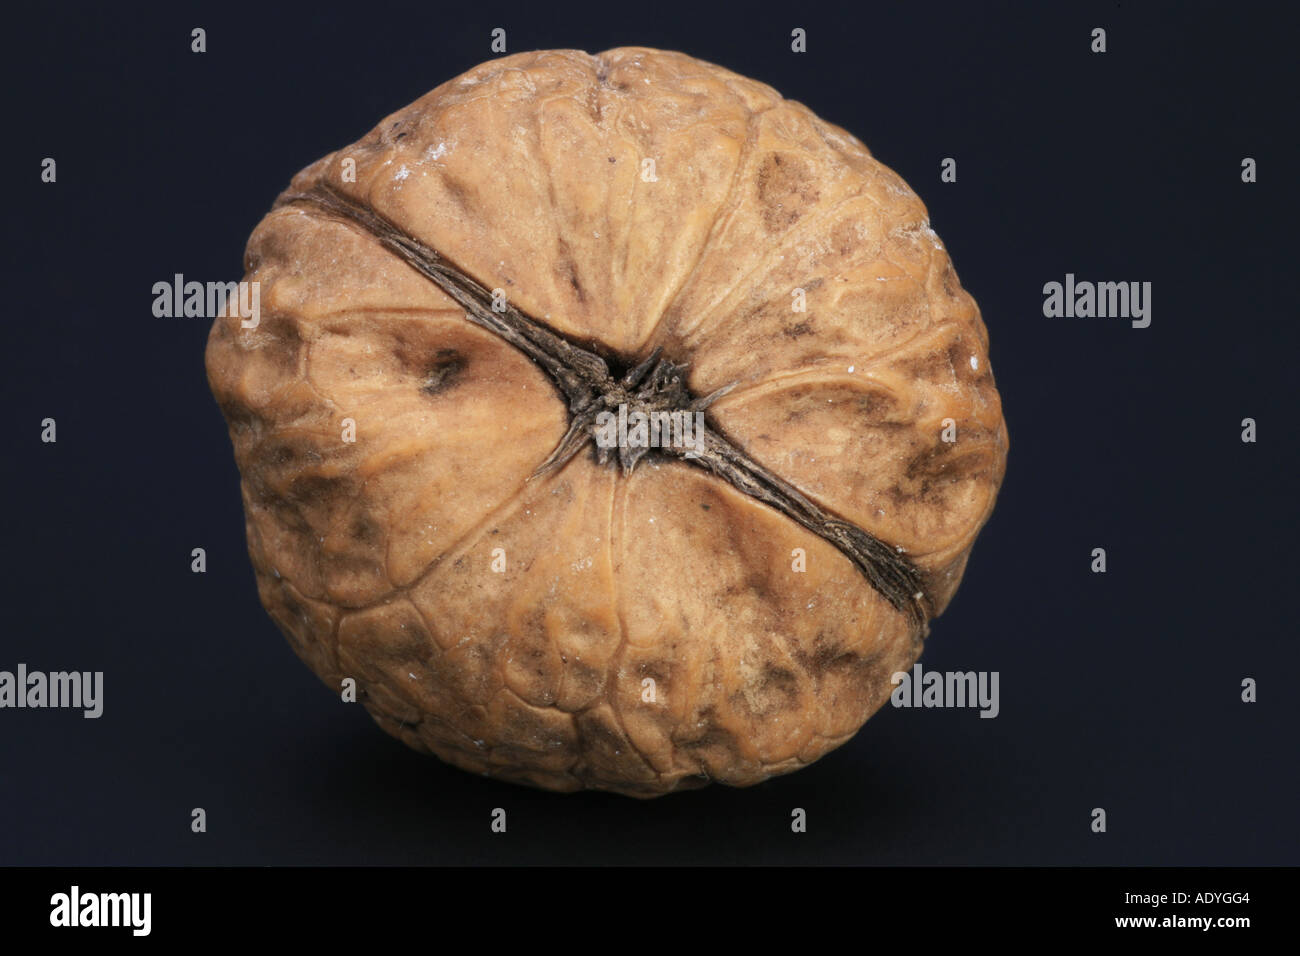 walnut (Juglans regia) Stock Photo